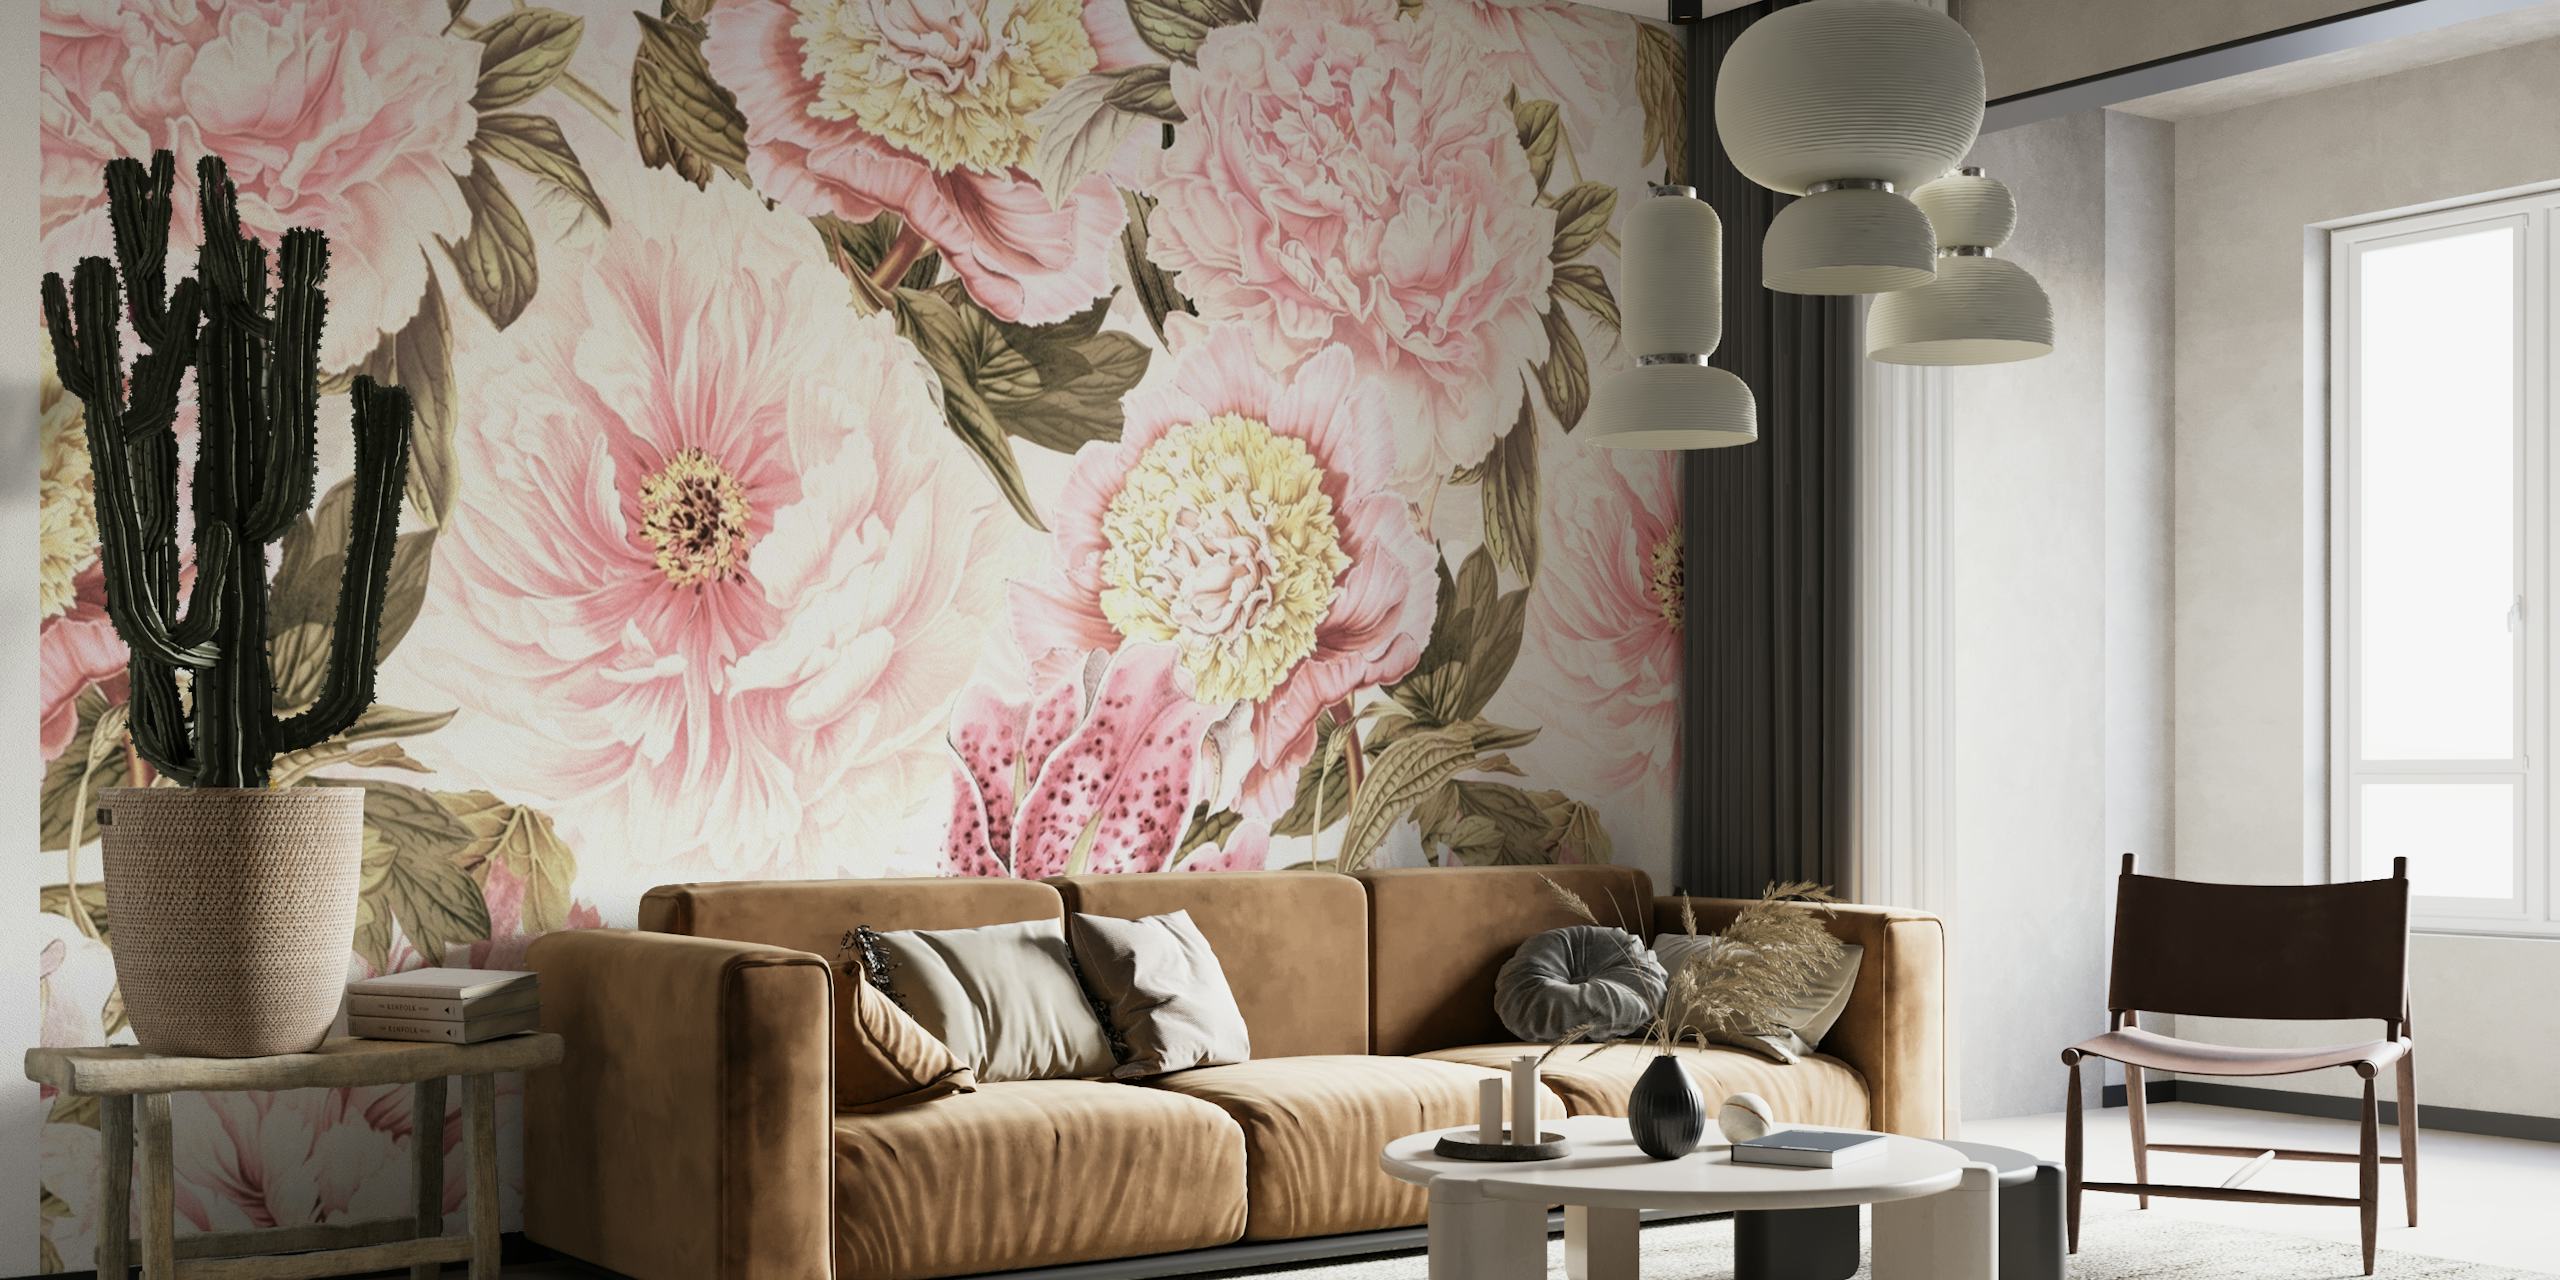 Mural de parede de inspiração vintage com opulentas peônias e lírios de estilo barroco com um esquema de cores pastel.